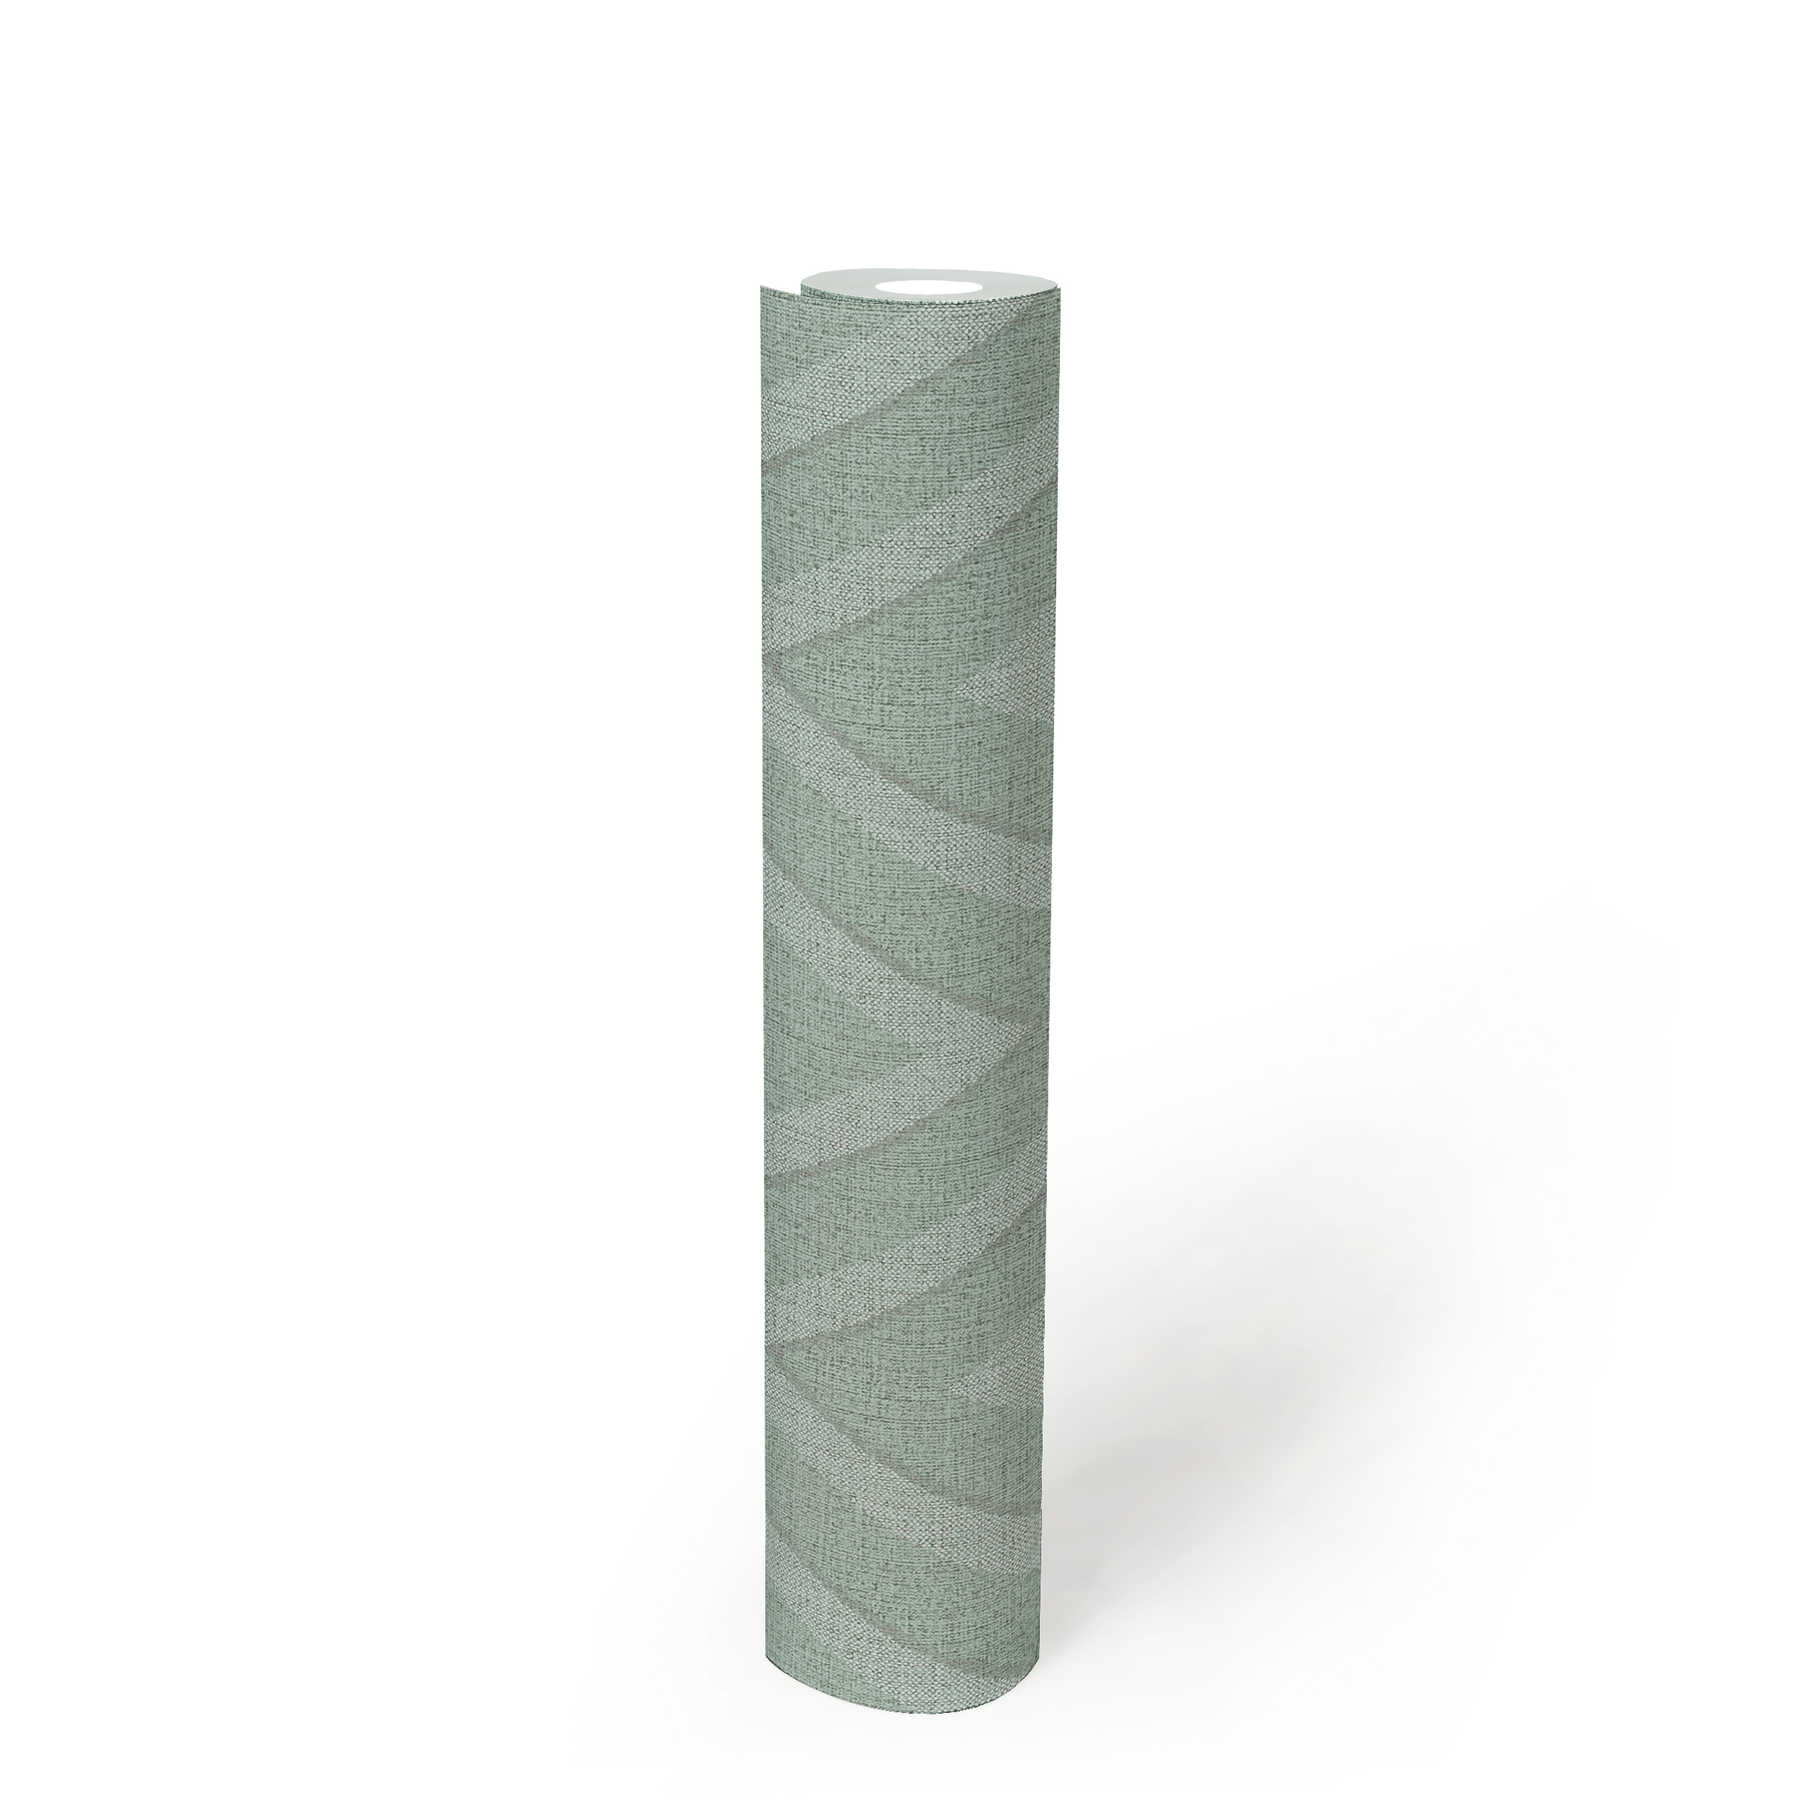             Linen look wallpaper zigzag pattern - blue, green
        